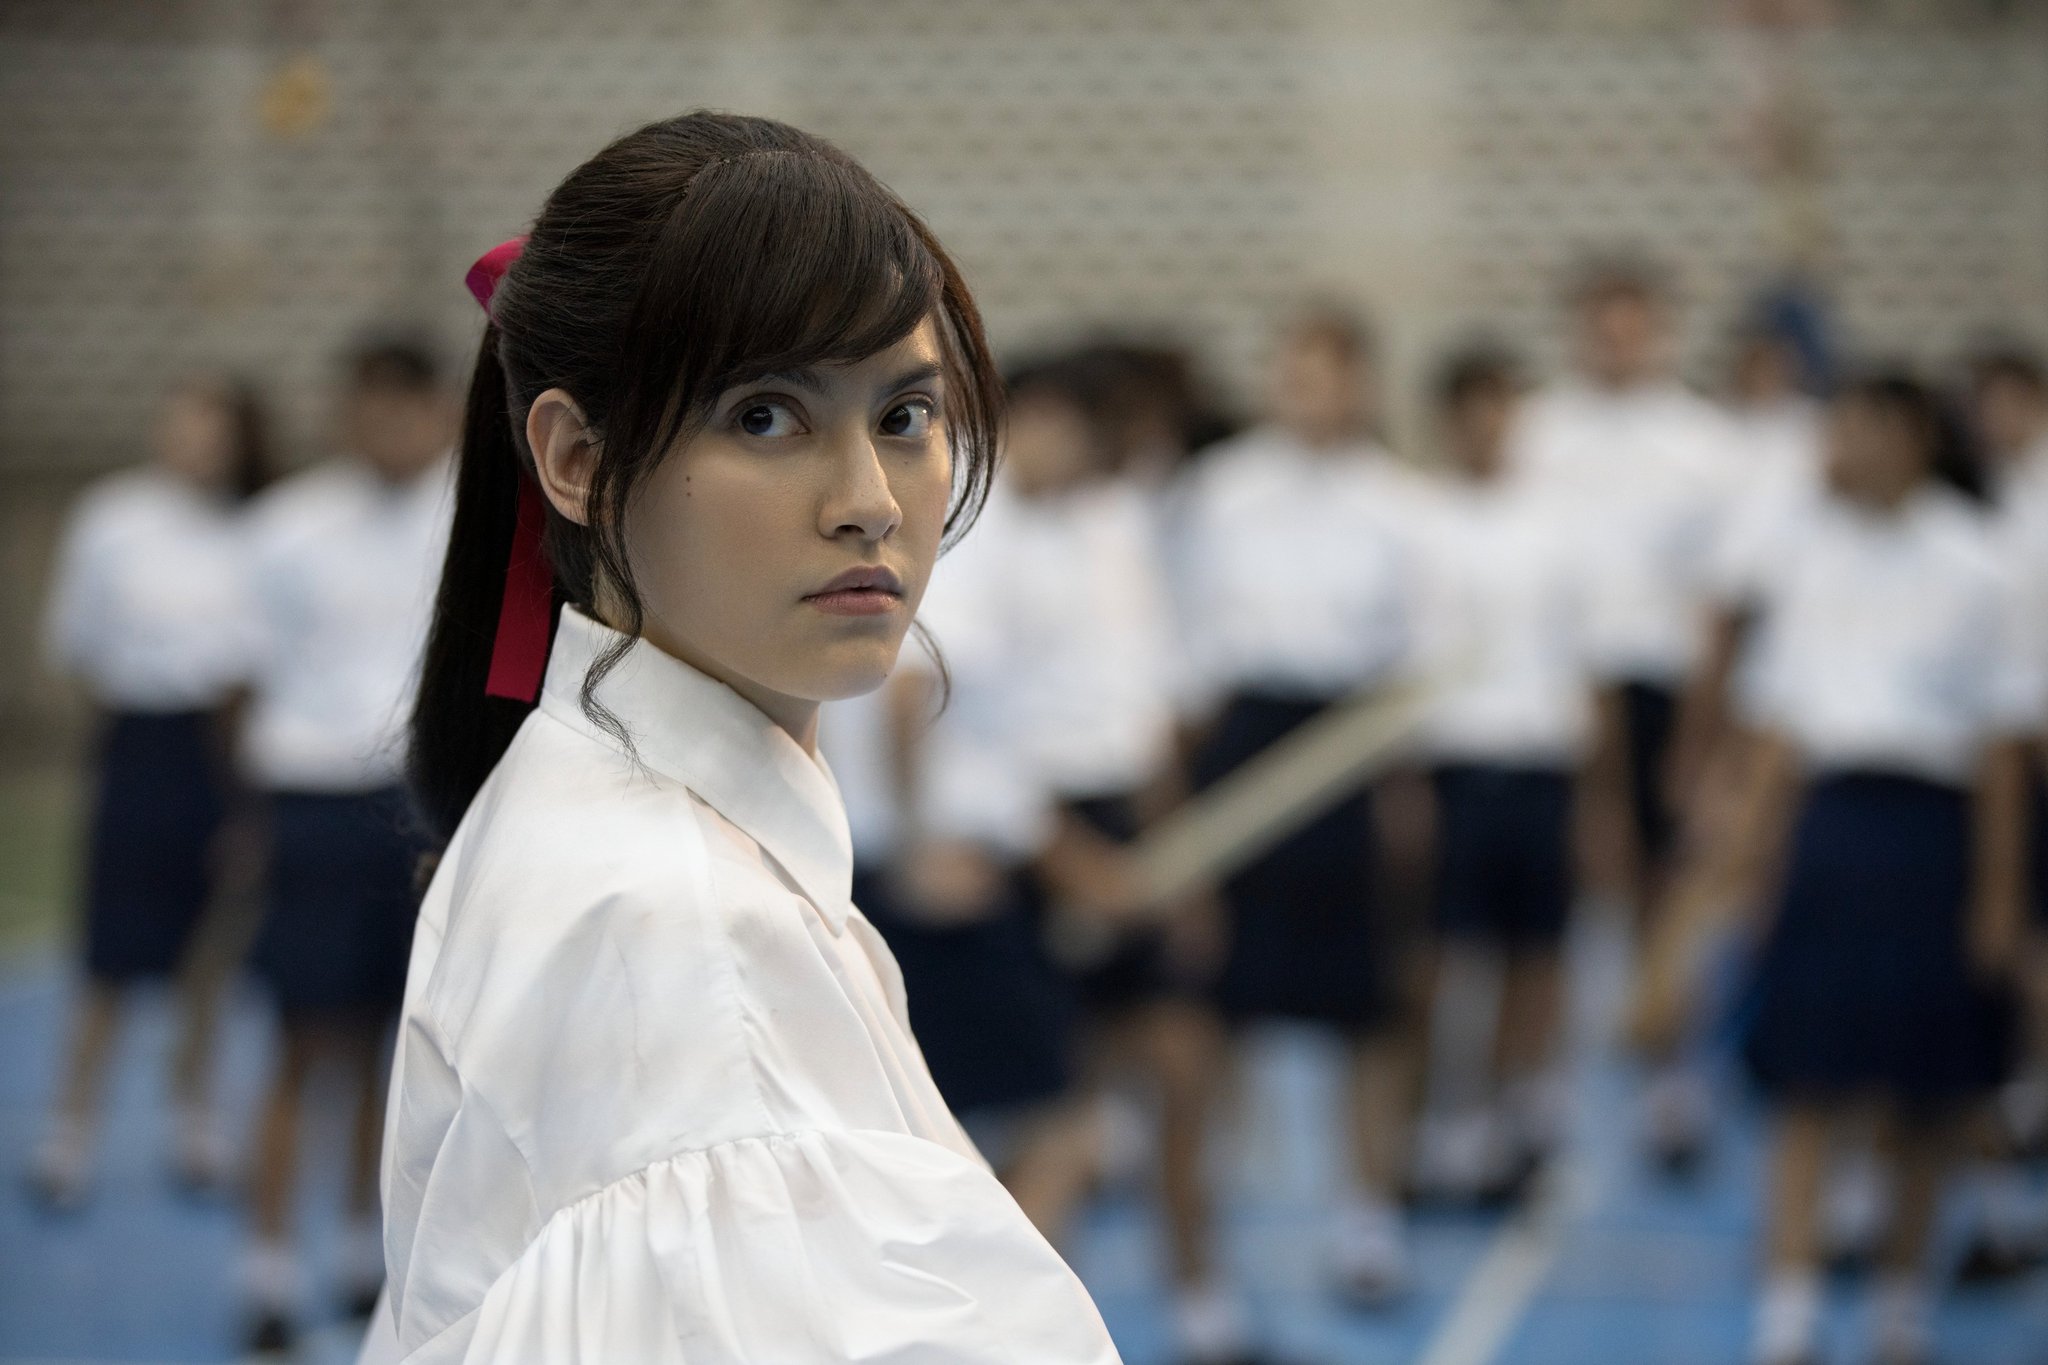 Điểm nhấn trong mùa phim thứ hai đến từ sự xuất hiện của Yuri (Chanya McClory) – thiếu nữ thắt ruy băng đỏ